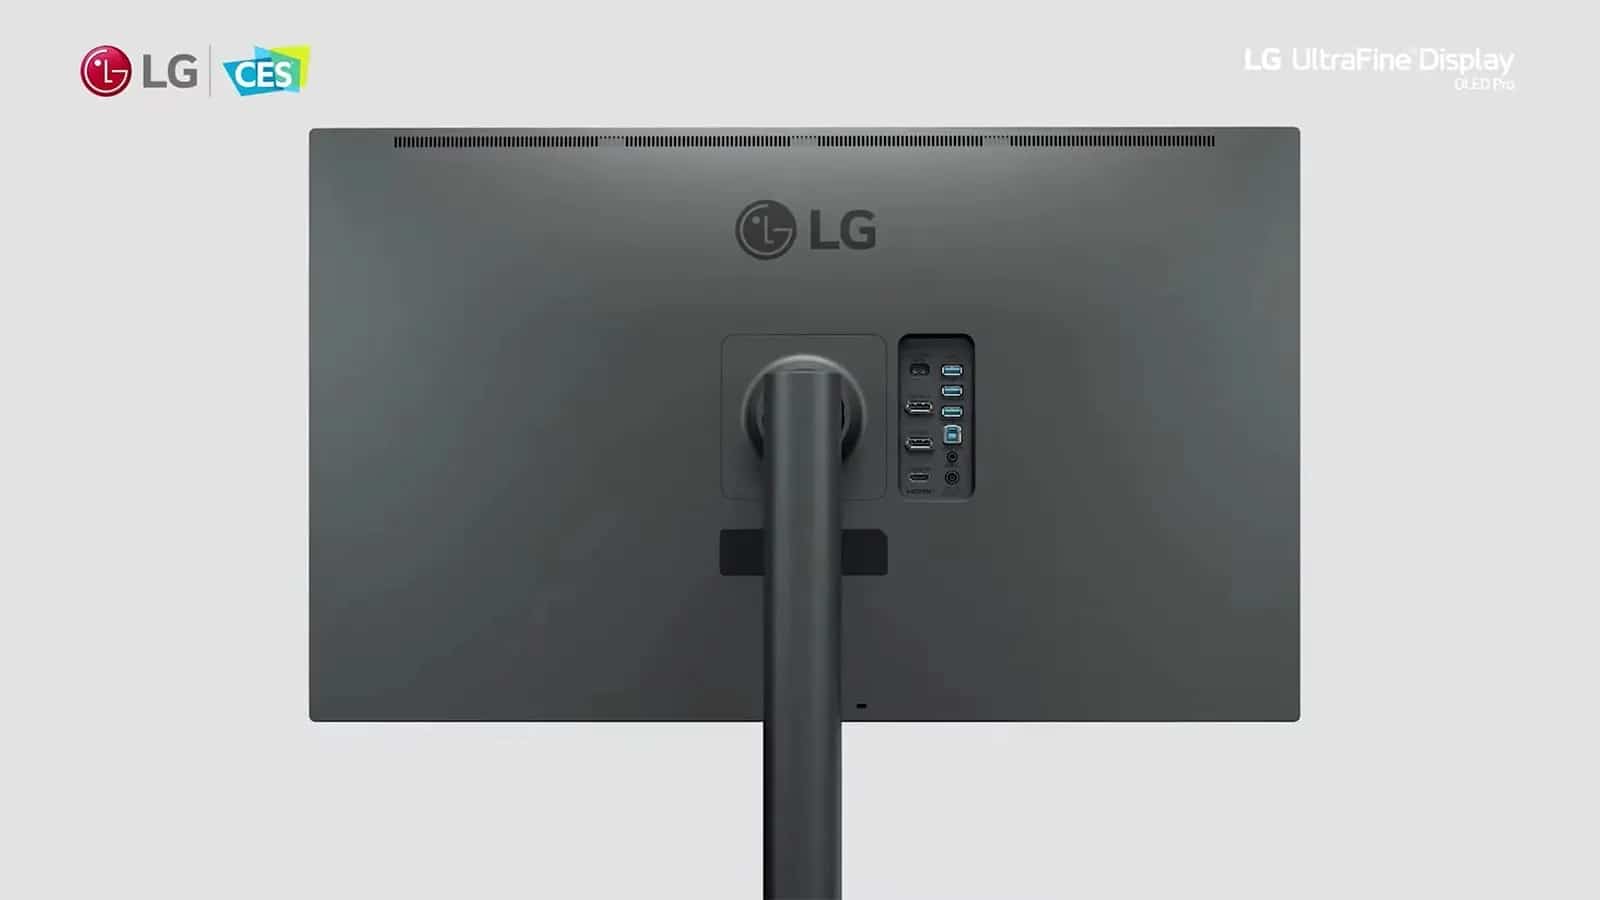 LG giới thiệu màn hình OLED 4K độ chính xác màu cao tại CES 2021